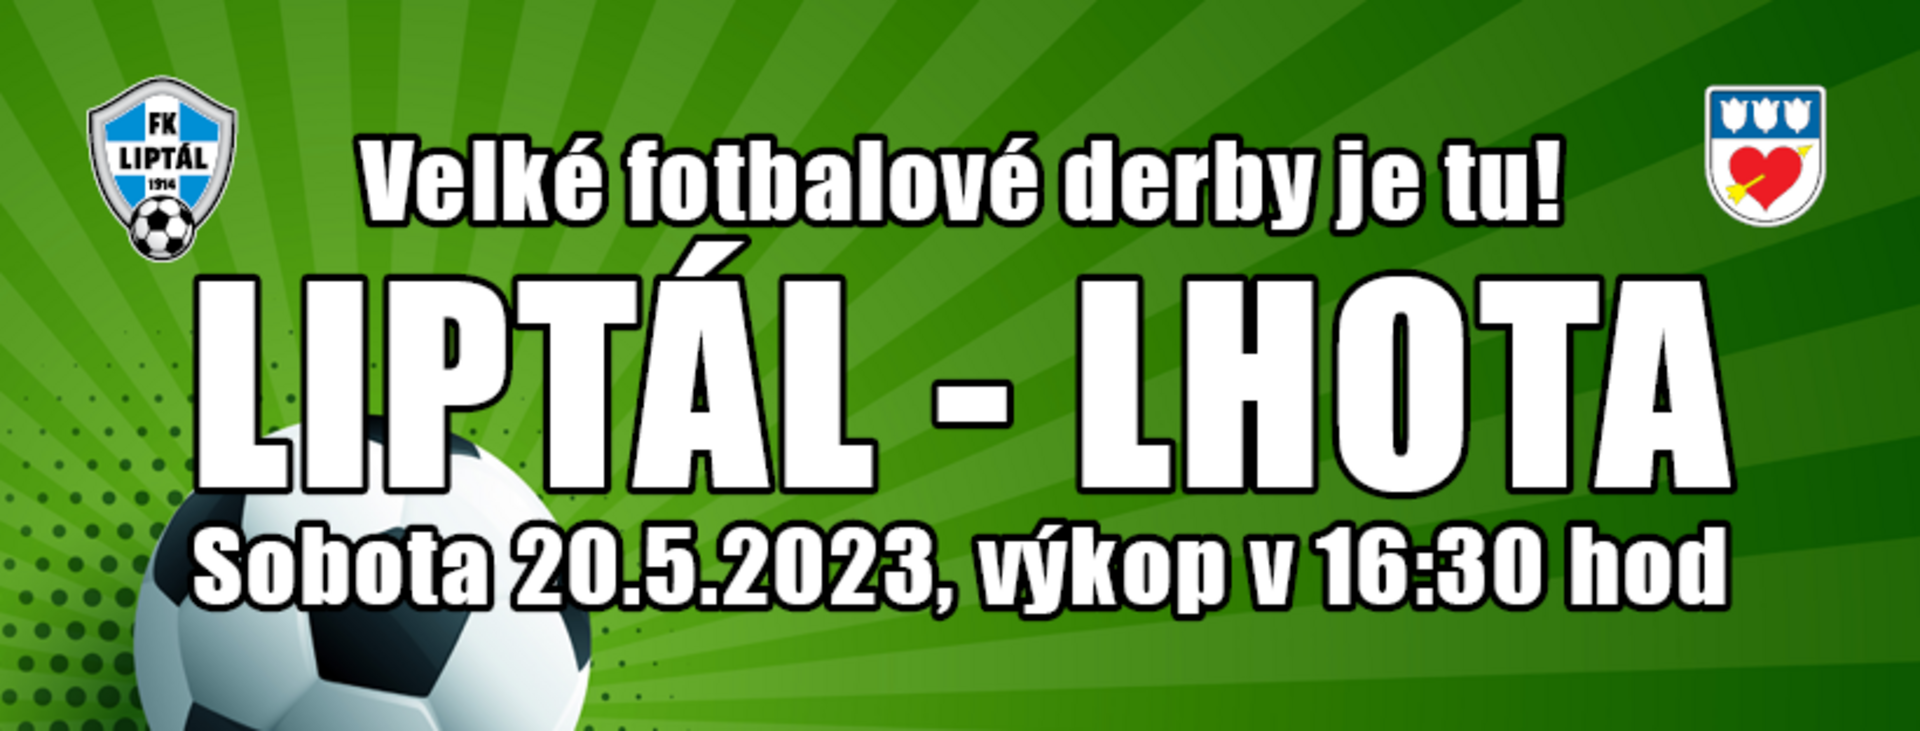 Plakát Velké fotbalové derby Liptál : Lhota - FOTO